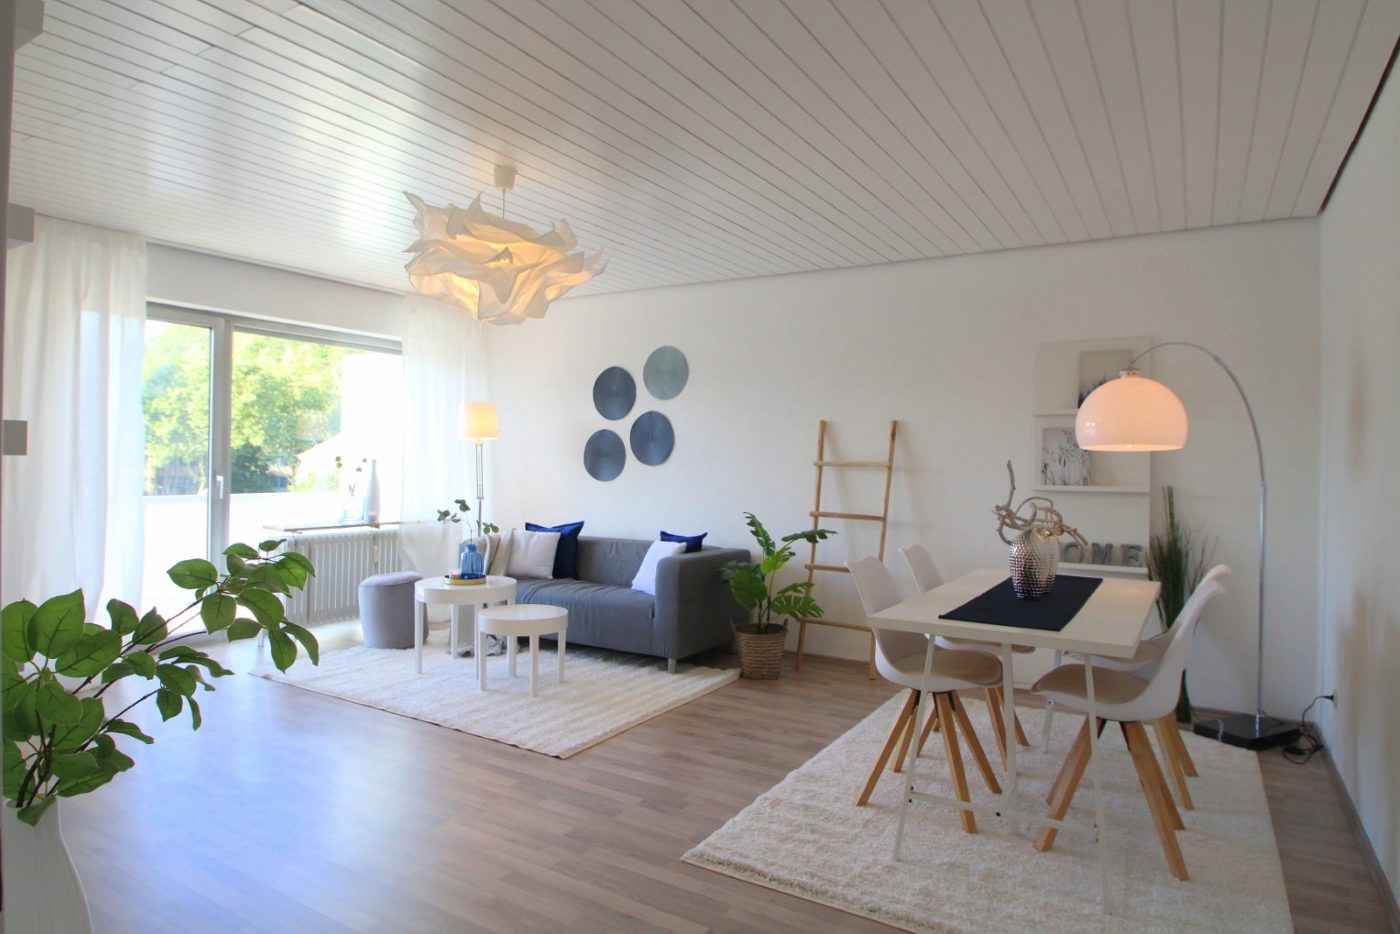 Wohnzimmer nach dem Homestaging durch Nicole Biernath von Blickfang Homestaging in Soest